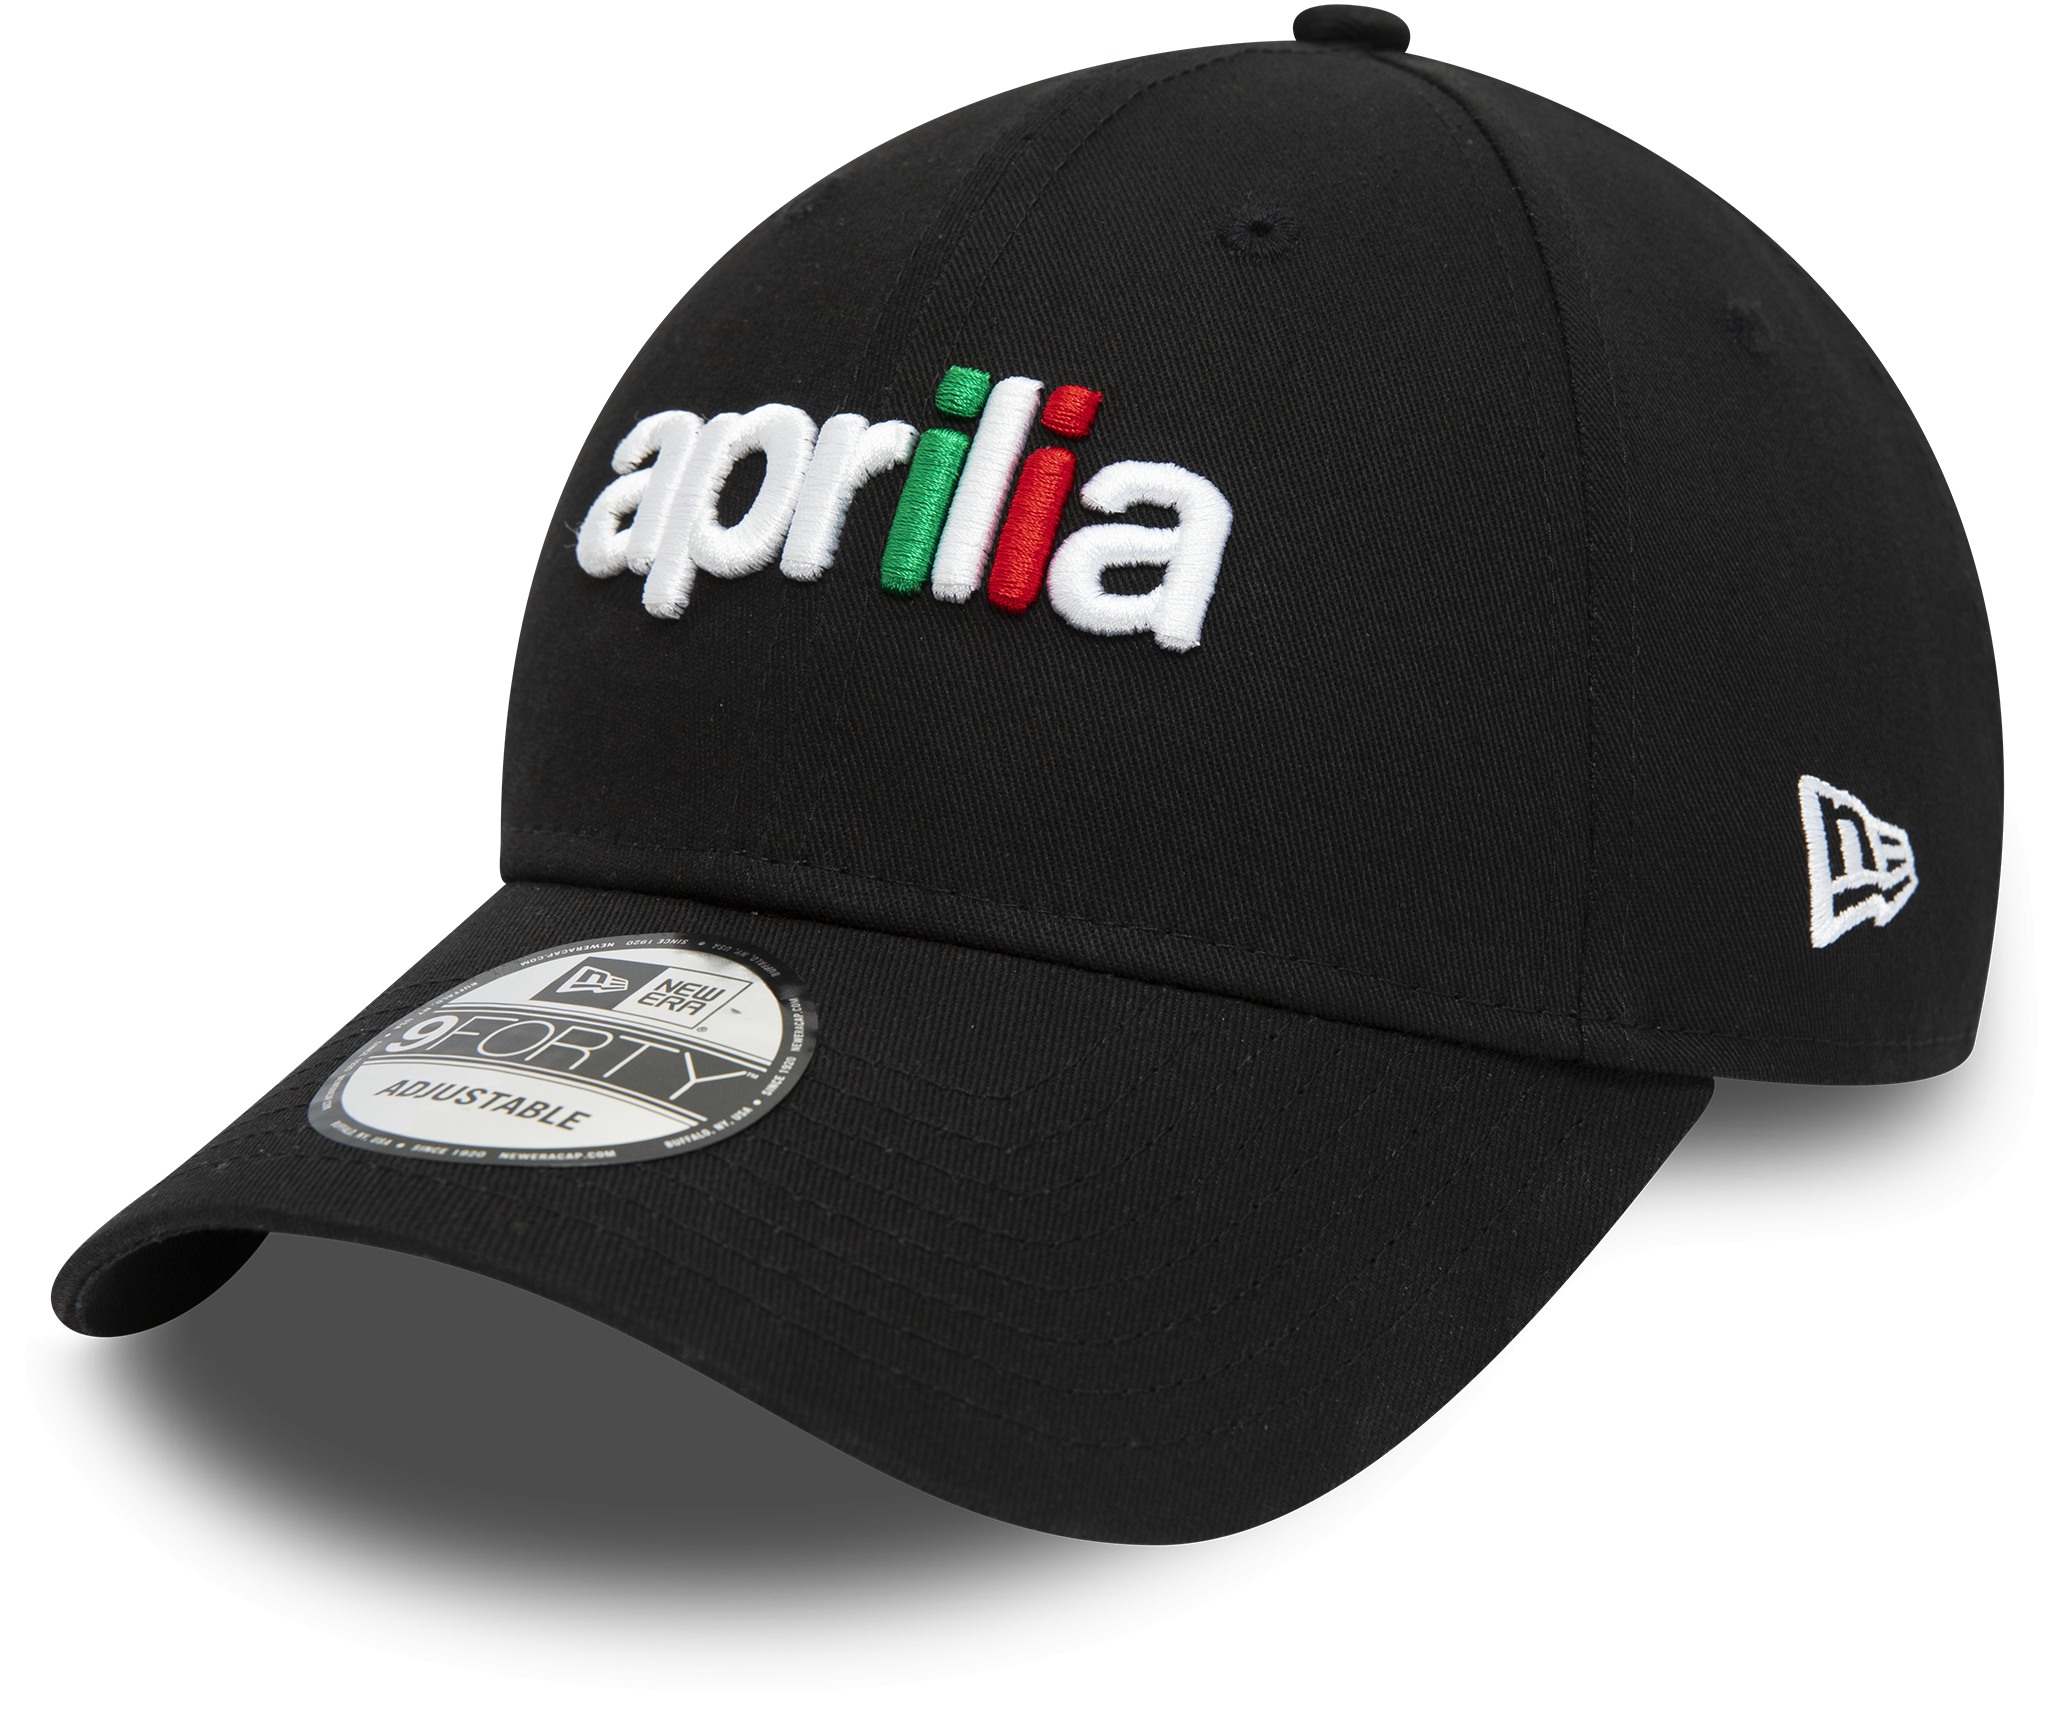 アプリリア Aprilia NewEra 9FORTY エッセンシャル ベースボール キャップ / ブラック画像